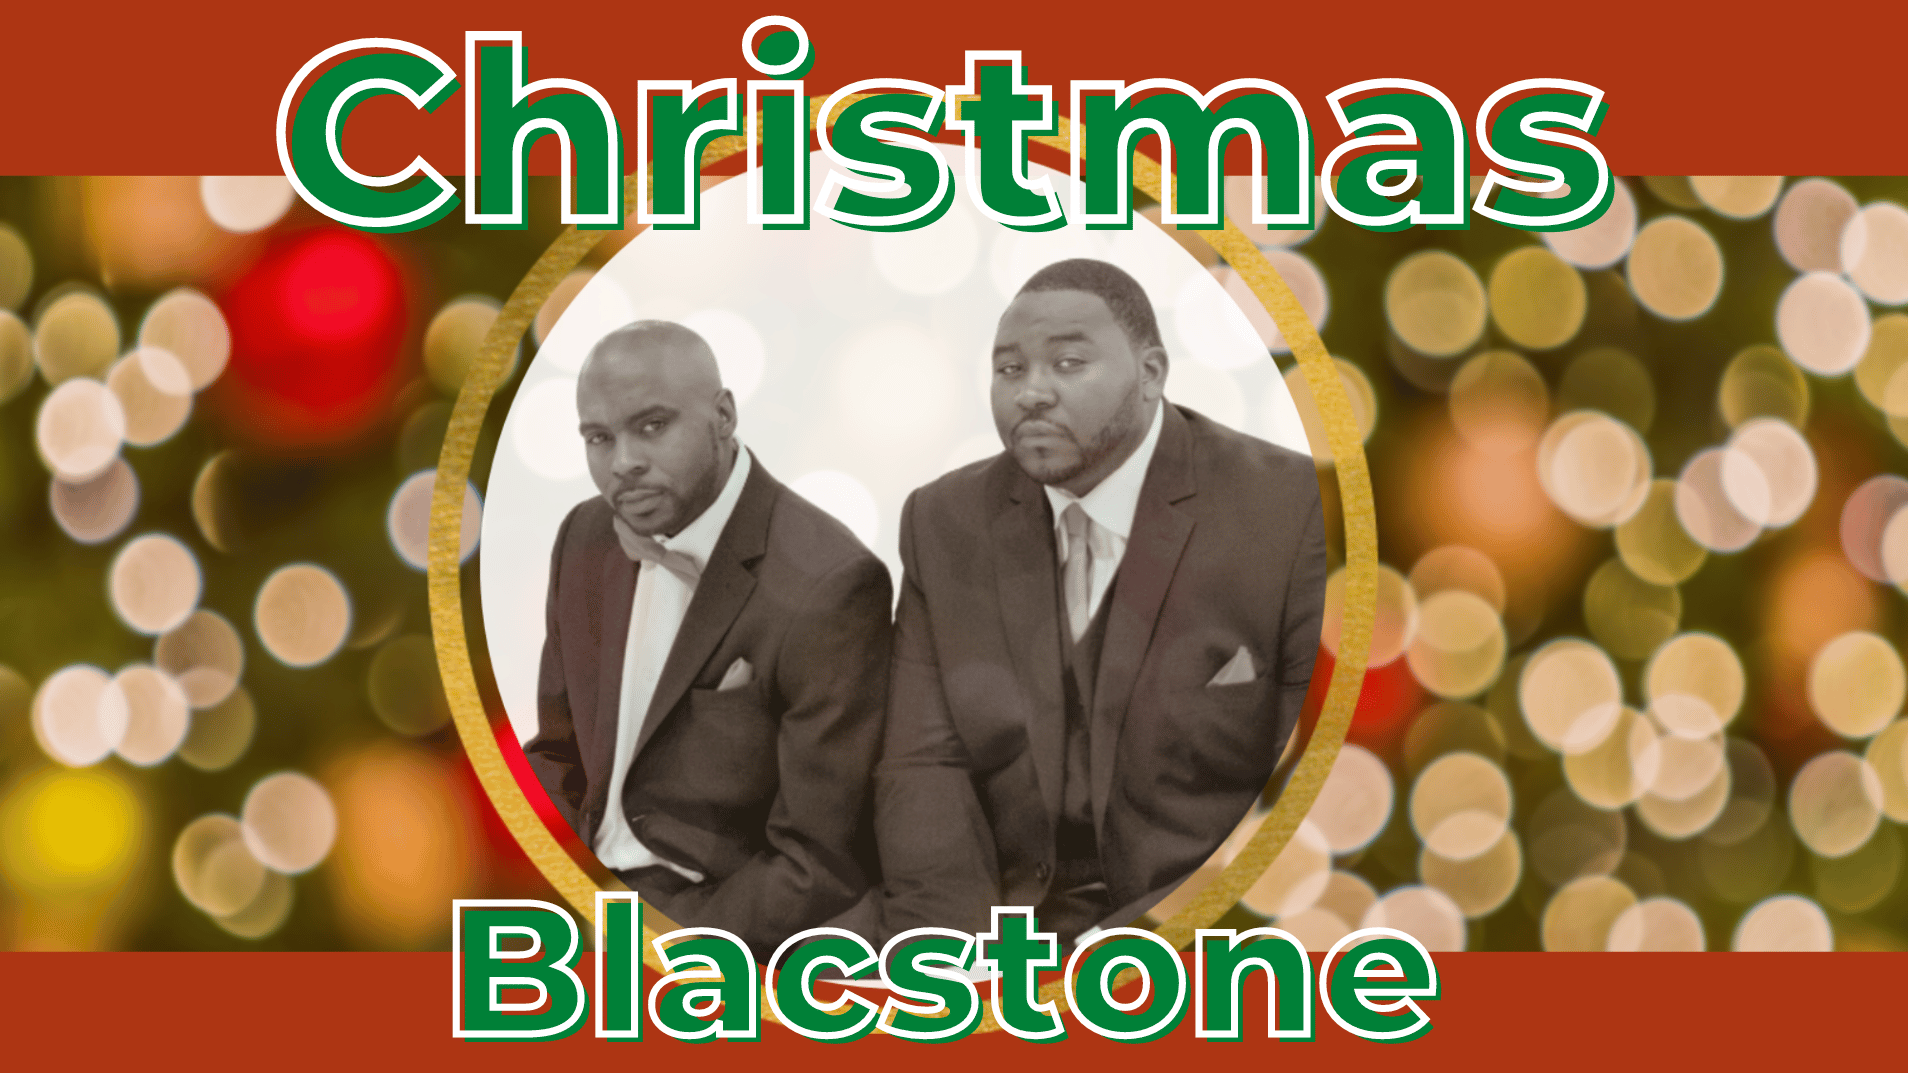 Christian Soul Artist Blacstone Announces New Single 